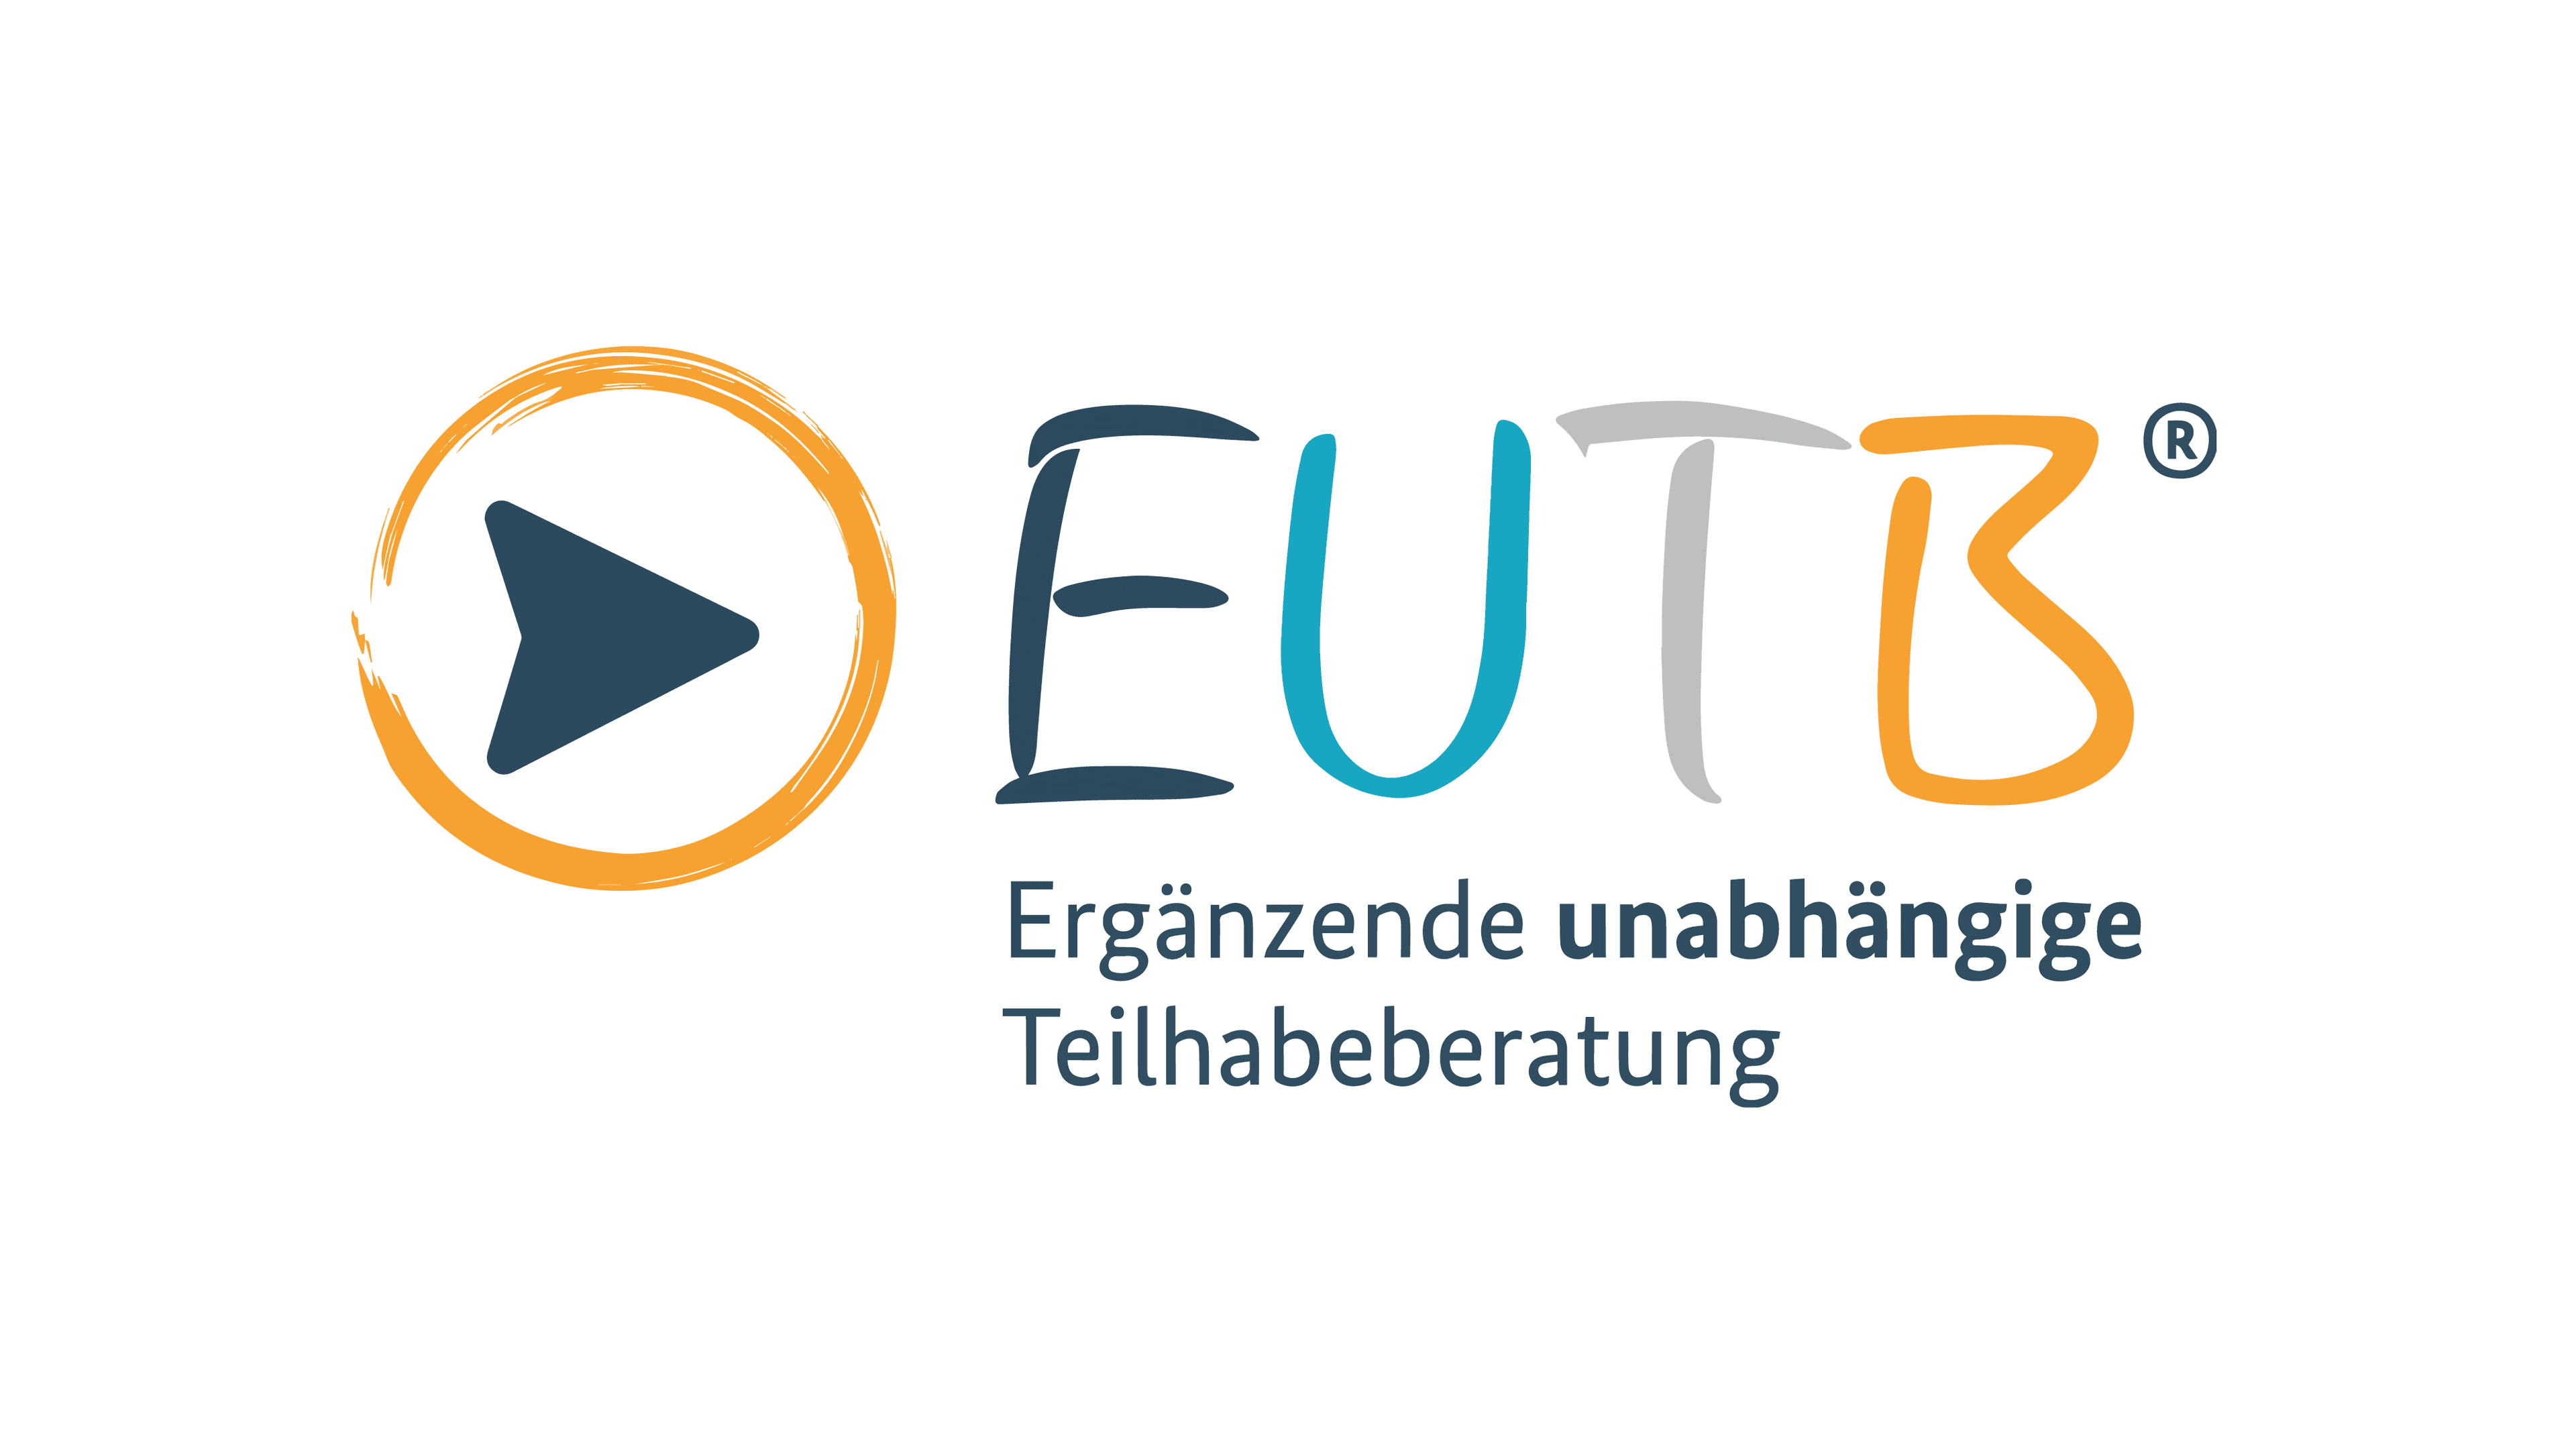 EUTB logo